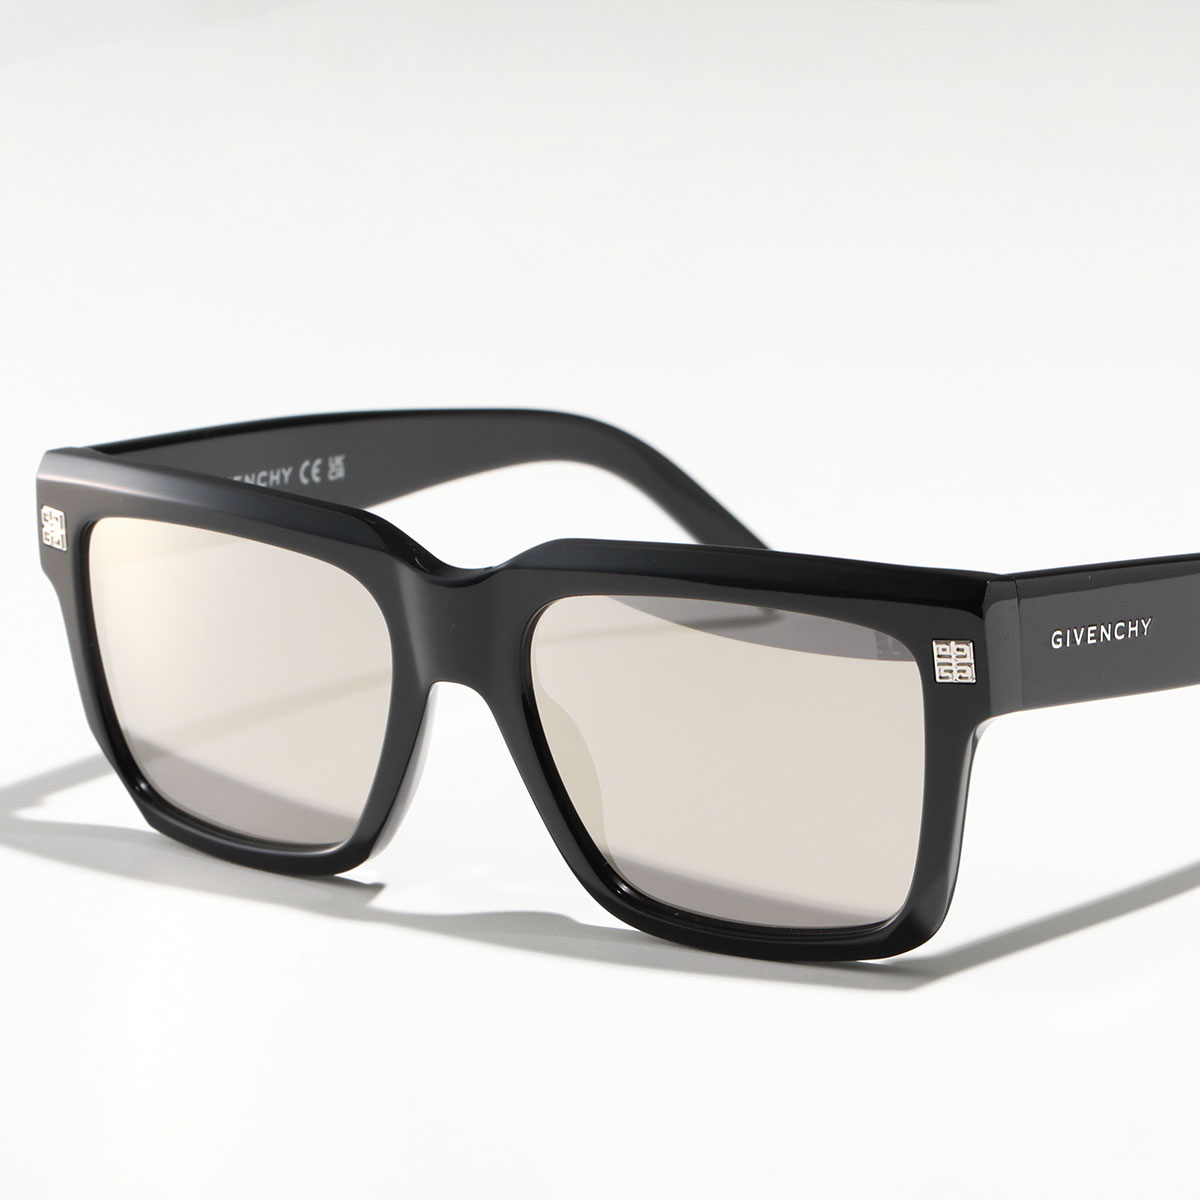 GIVENCHY ジバンシィ サングラス GV40060I メンズ スクエア型 メガネ 眼鏡 4G ...